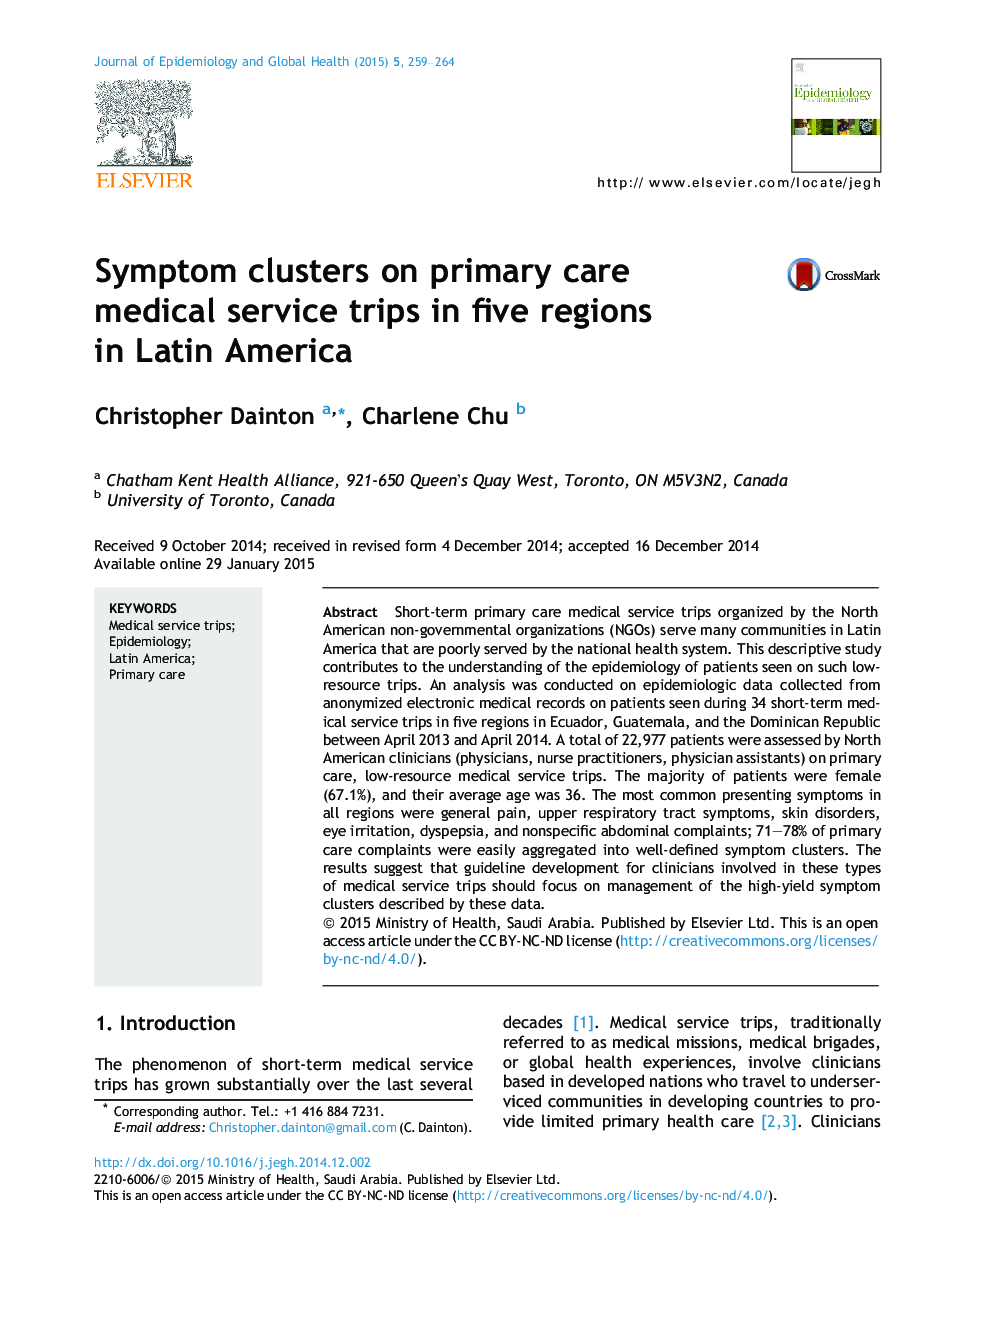 خوشه های علائم در سفرهای خدمات پزشکی مراقبت های اولیه در پنج منطقه در آمریکای لاتین